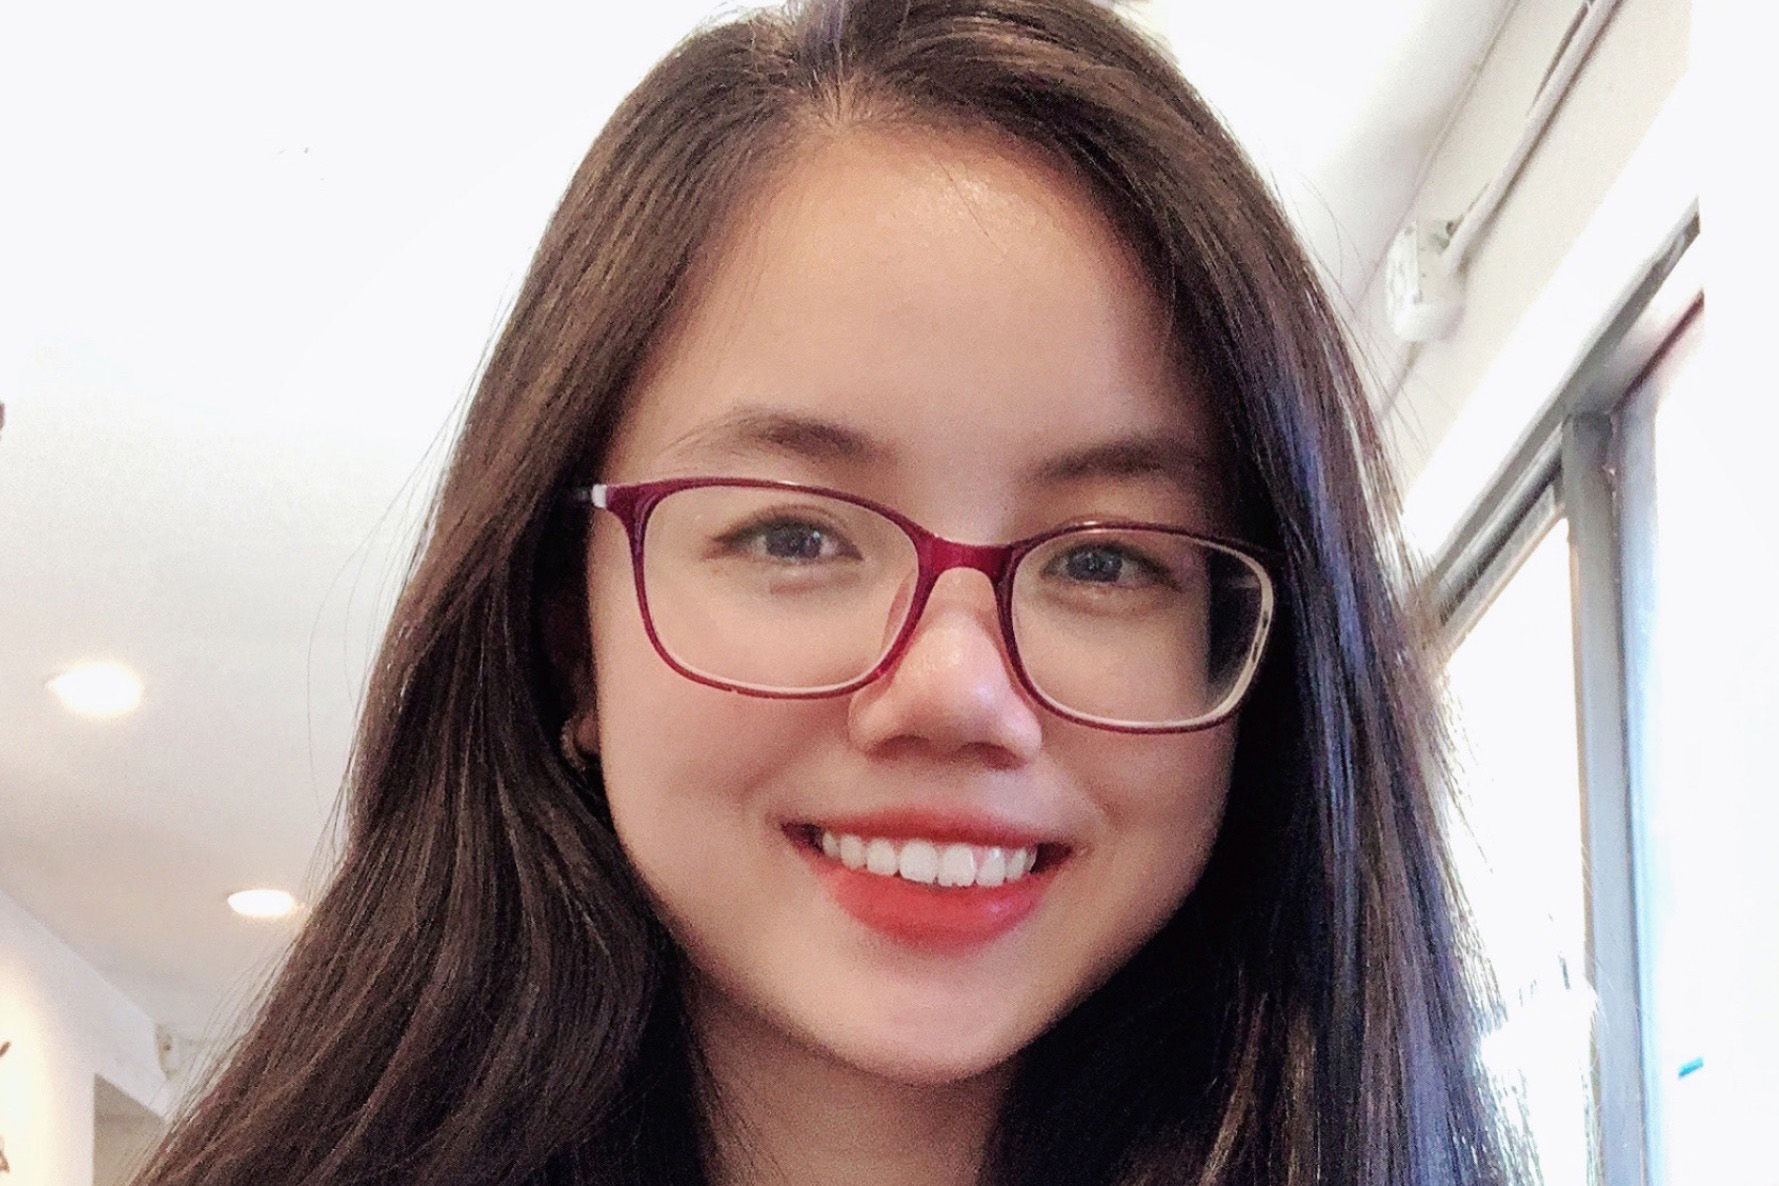 Ngan Nguyen smiles wearing red glasses